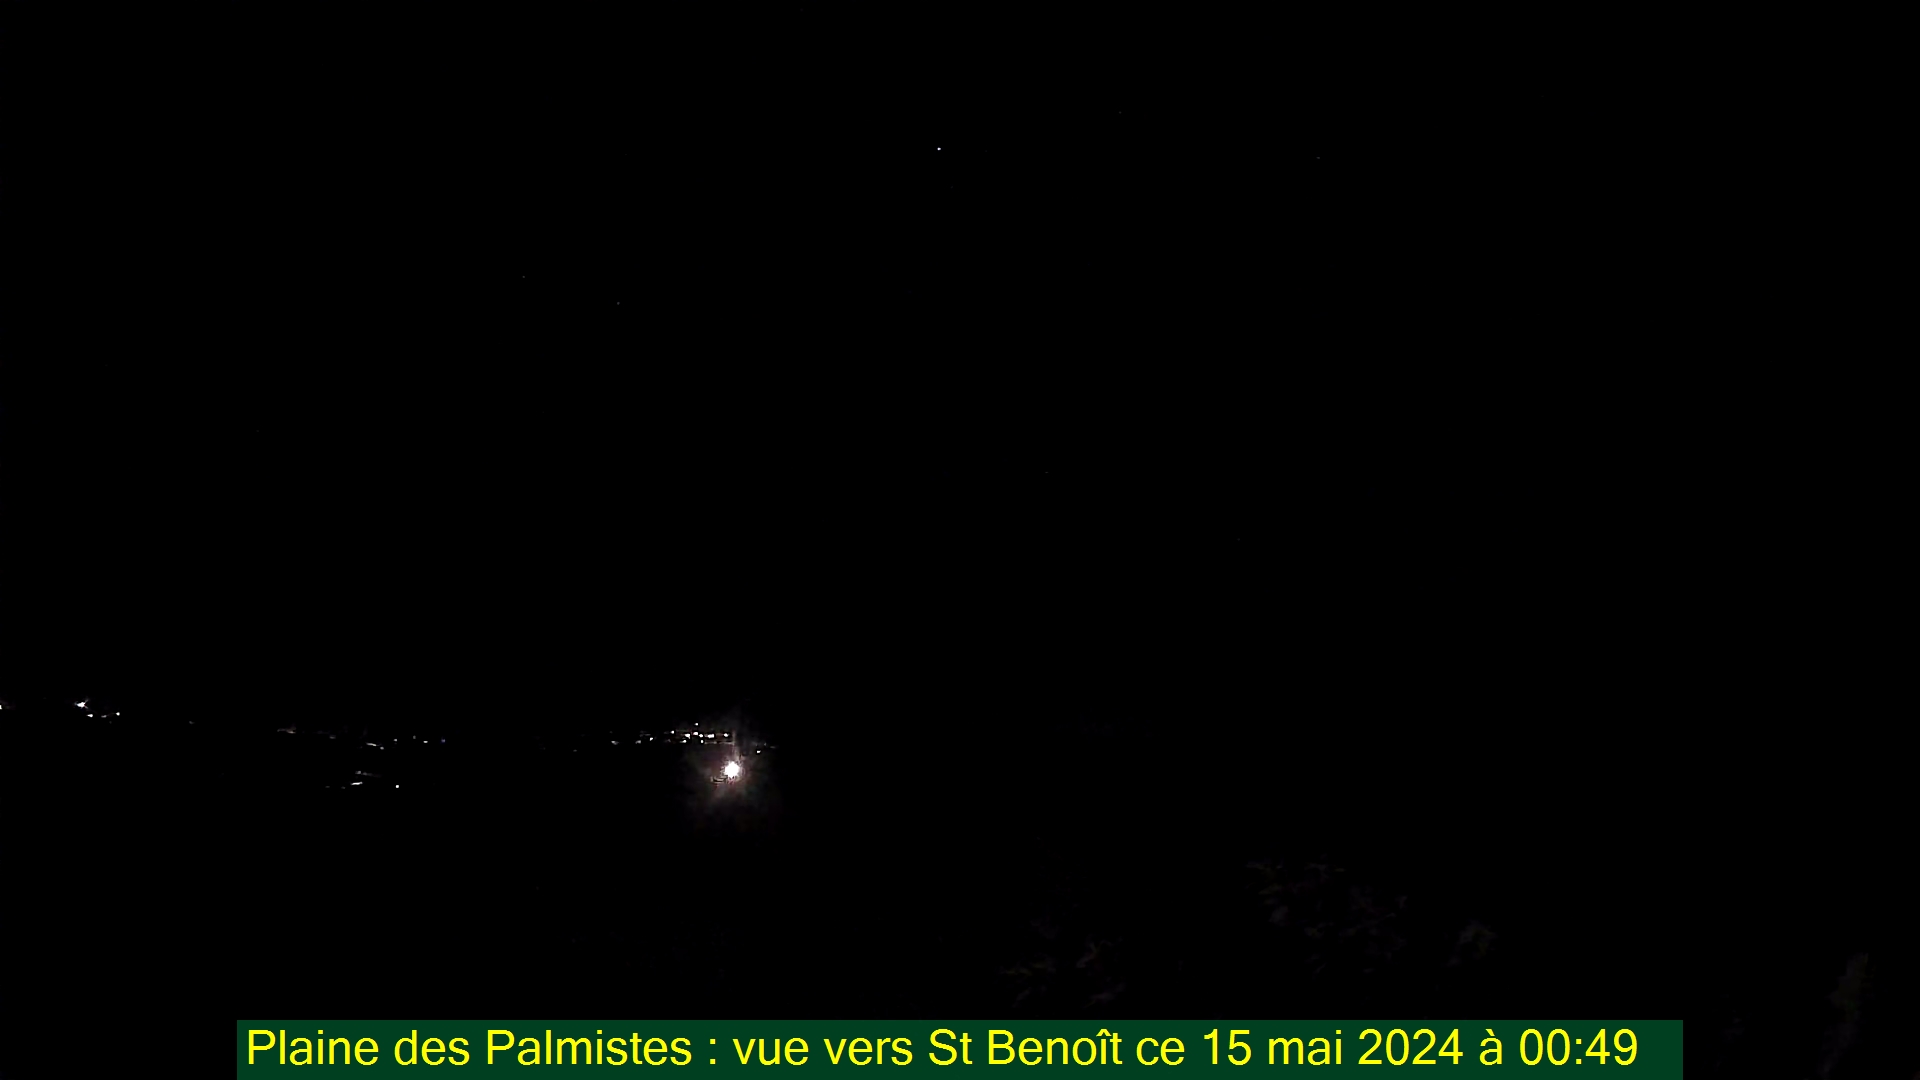 Saint-Denis (Réunion) Mon. 00:50